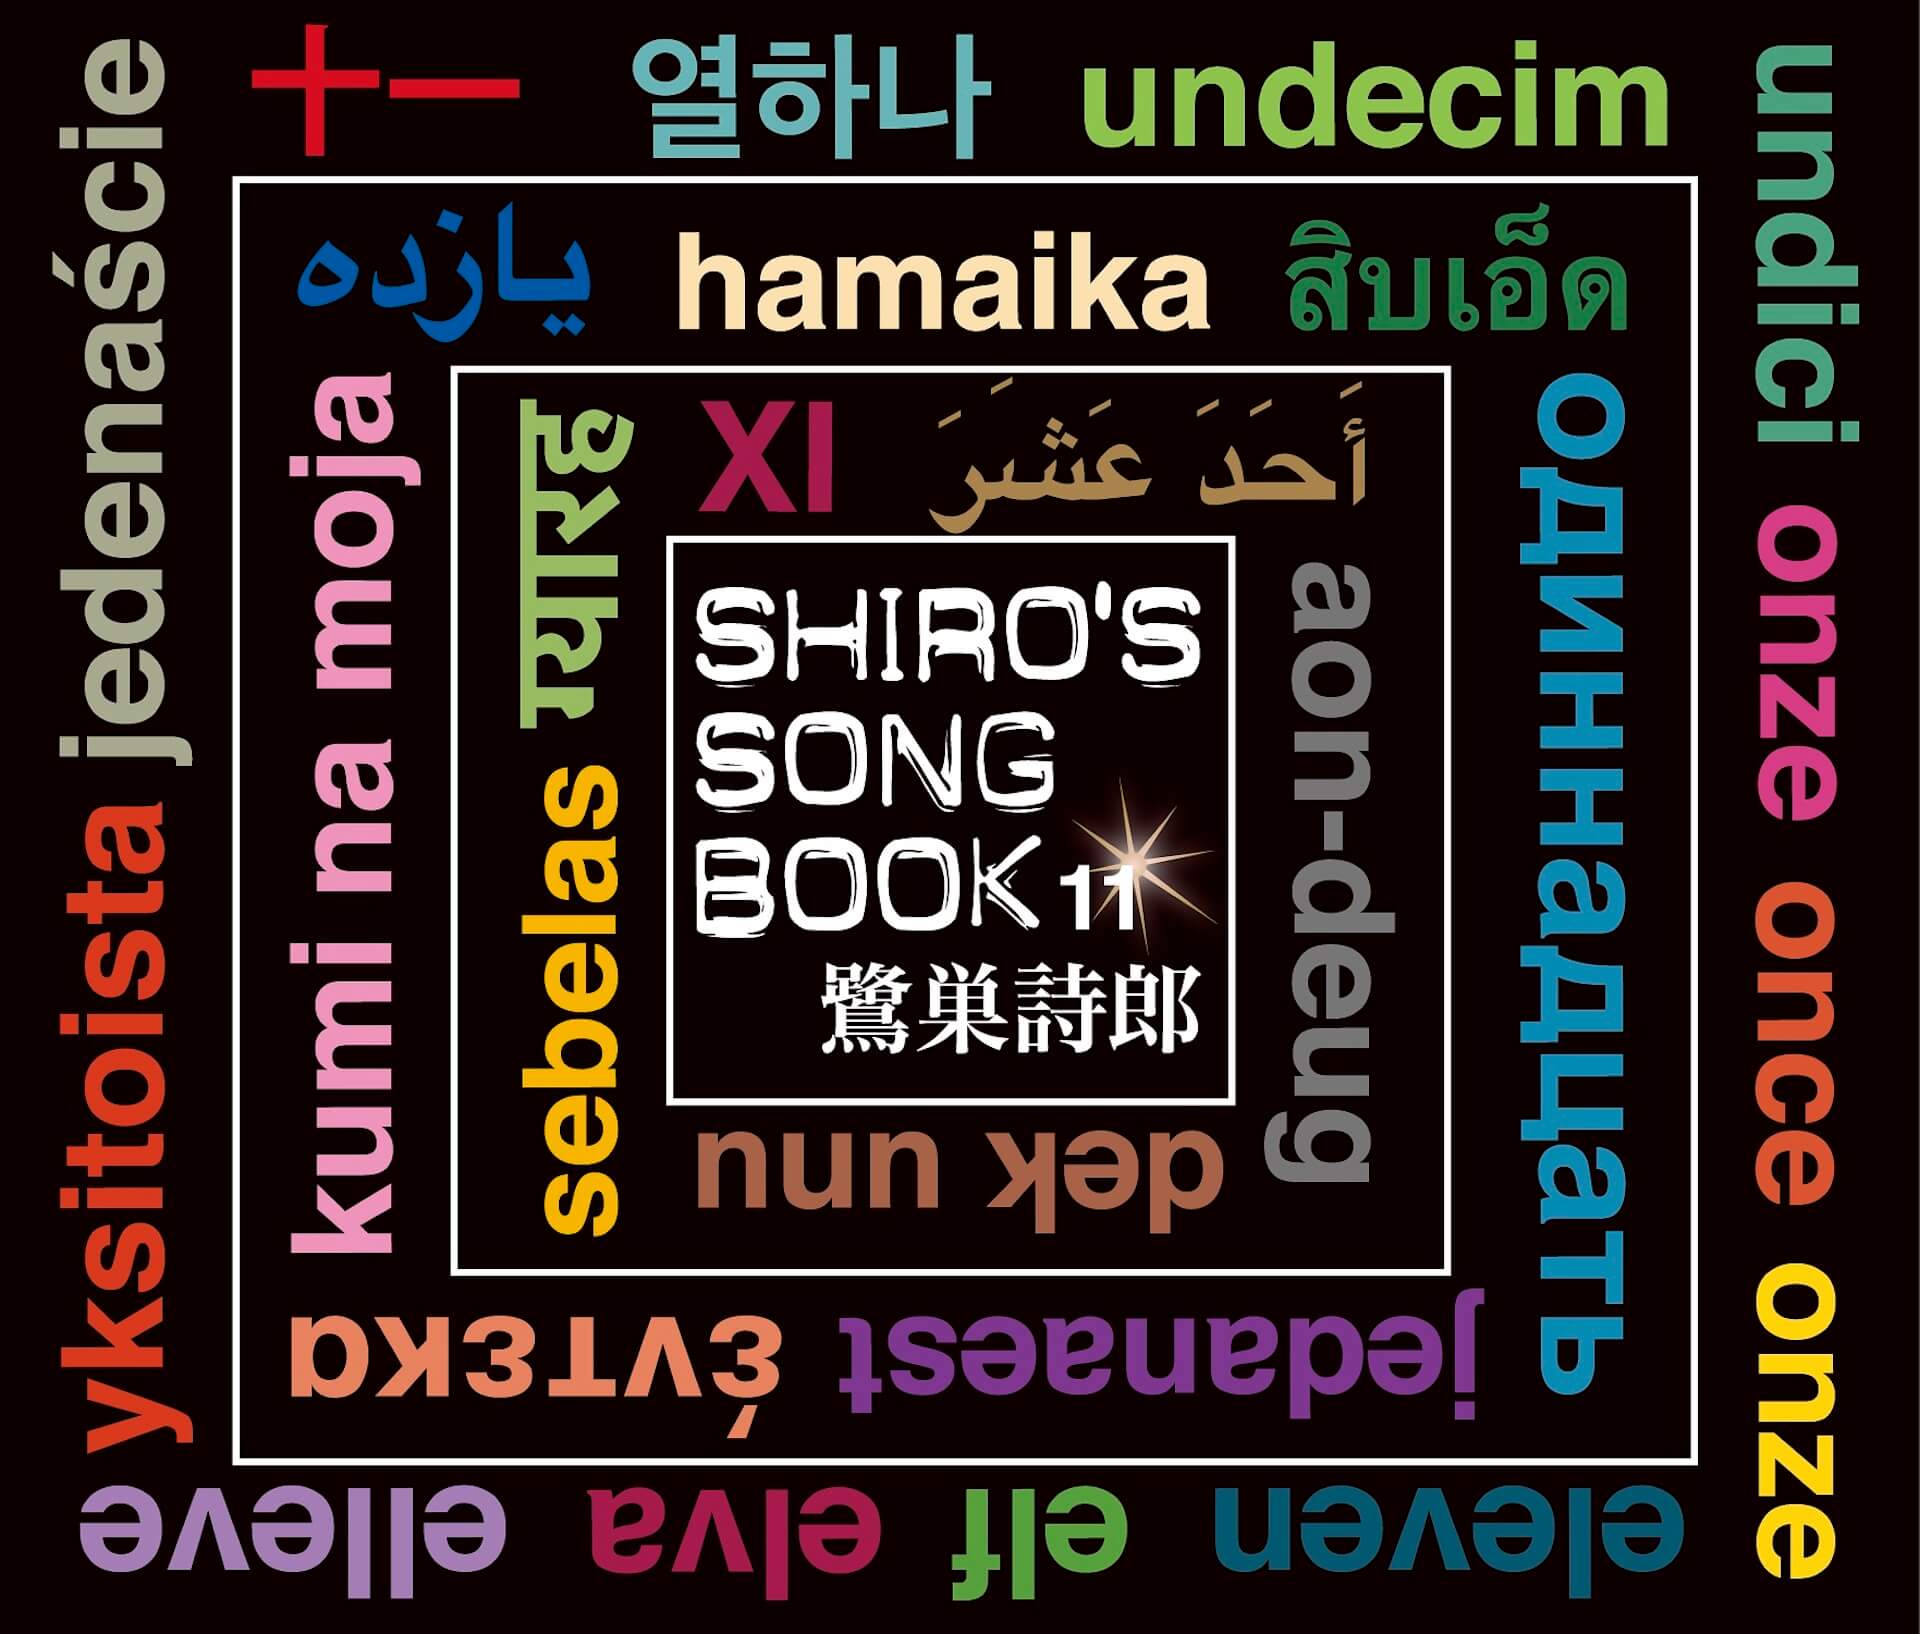 鷺巣詩郎、様々なジャンルのセルフカバーを収録したアルバム『SHIRO’S SONGBOOK 11』が発売！ music_220124_shirosagisu_01